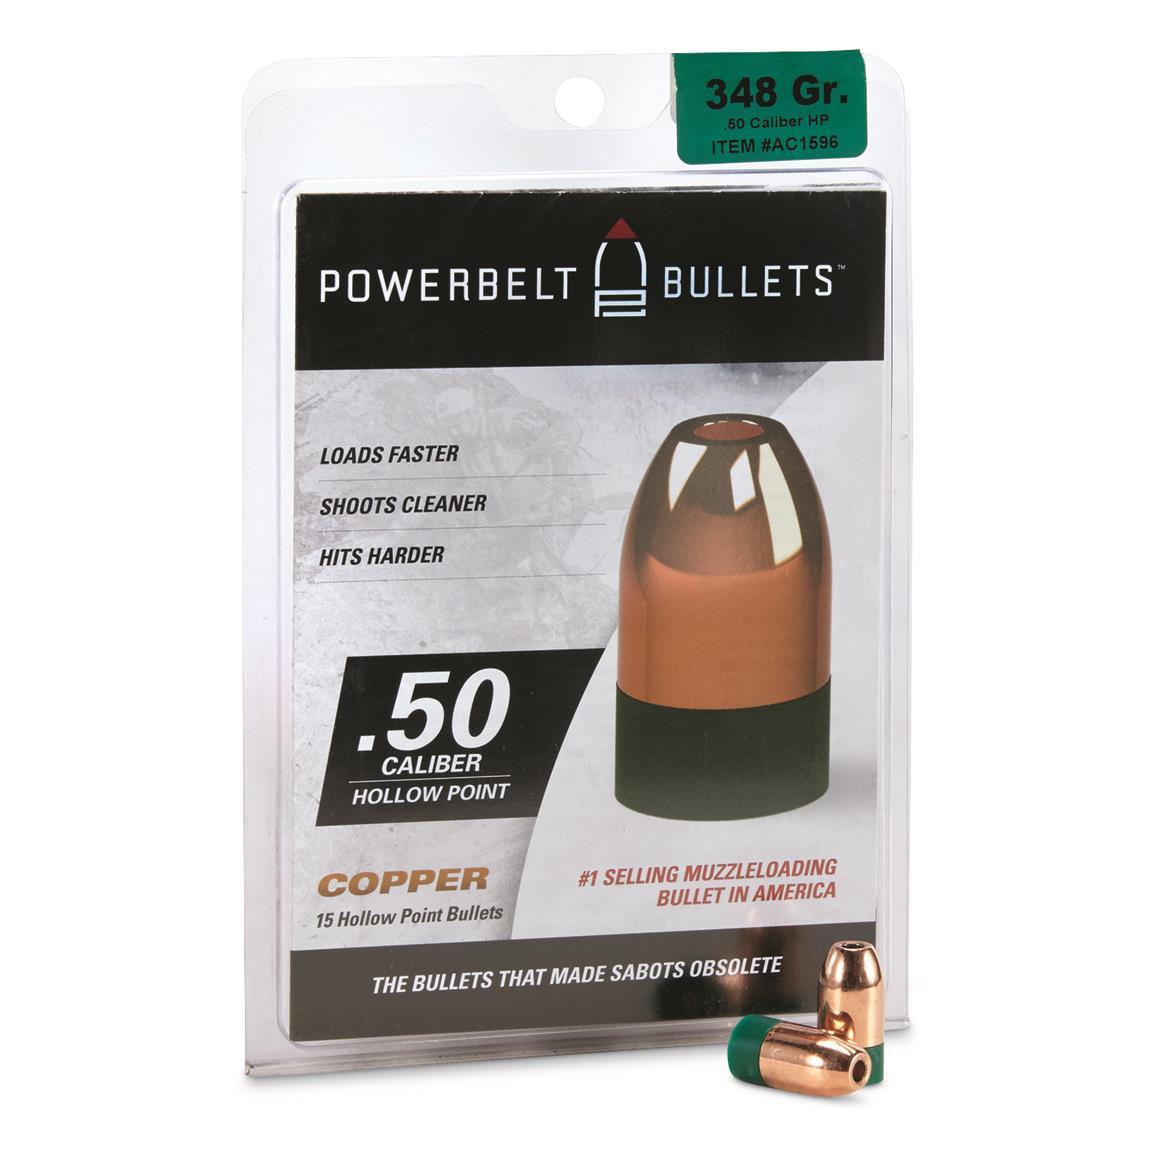 Powerbelt Bullets Ballistics Chart